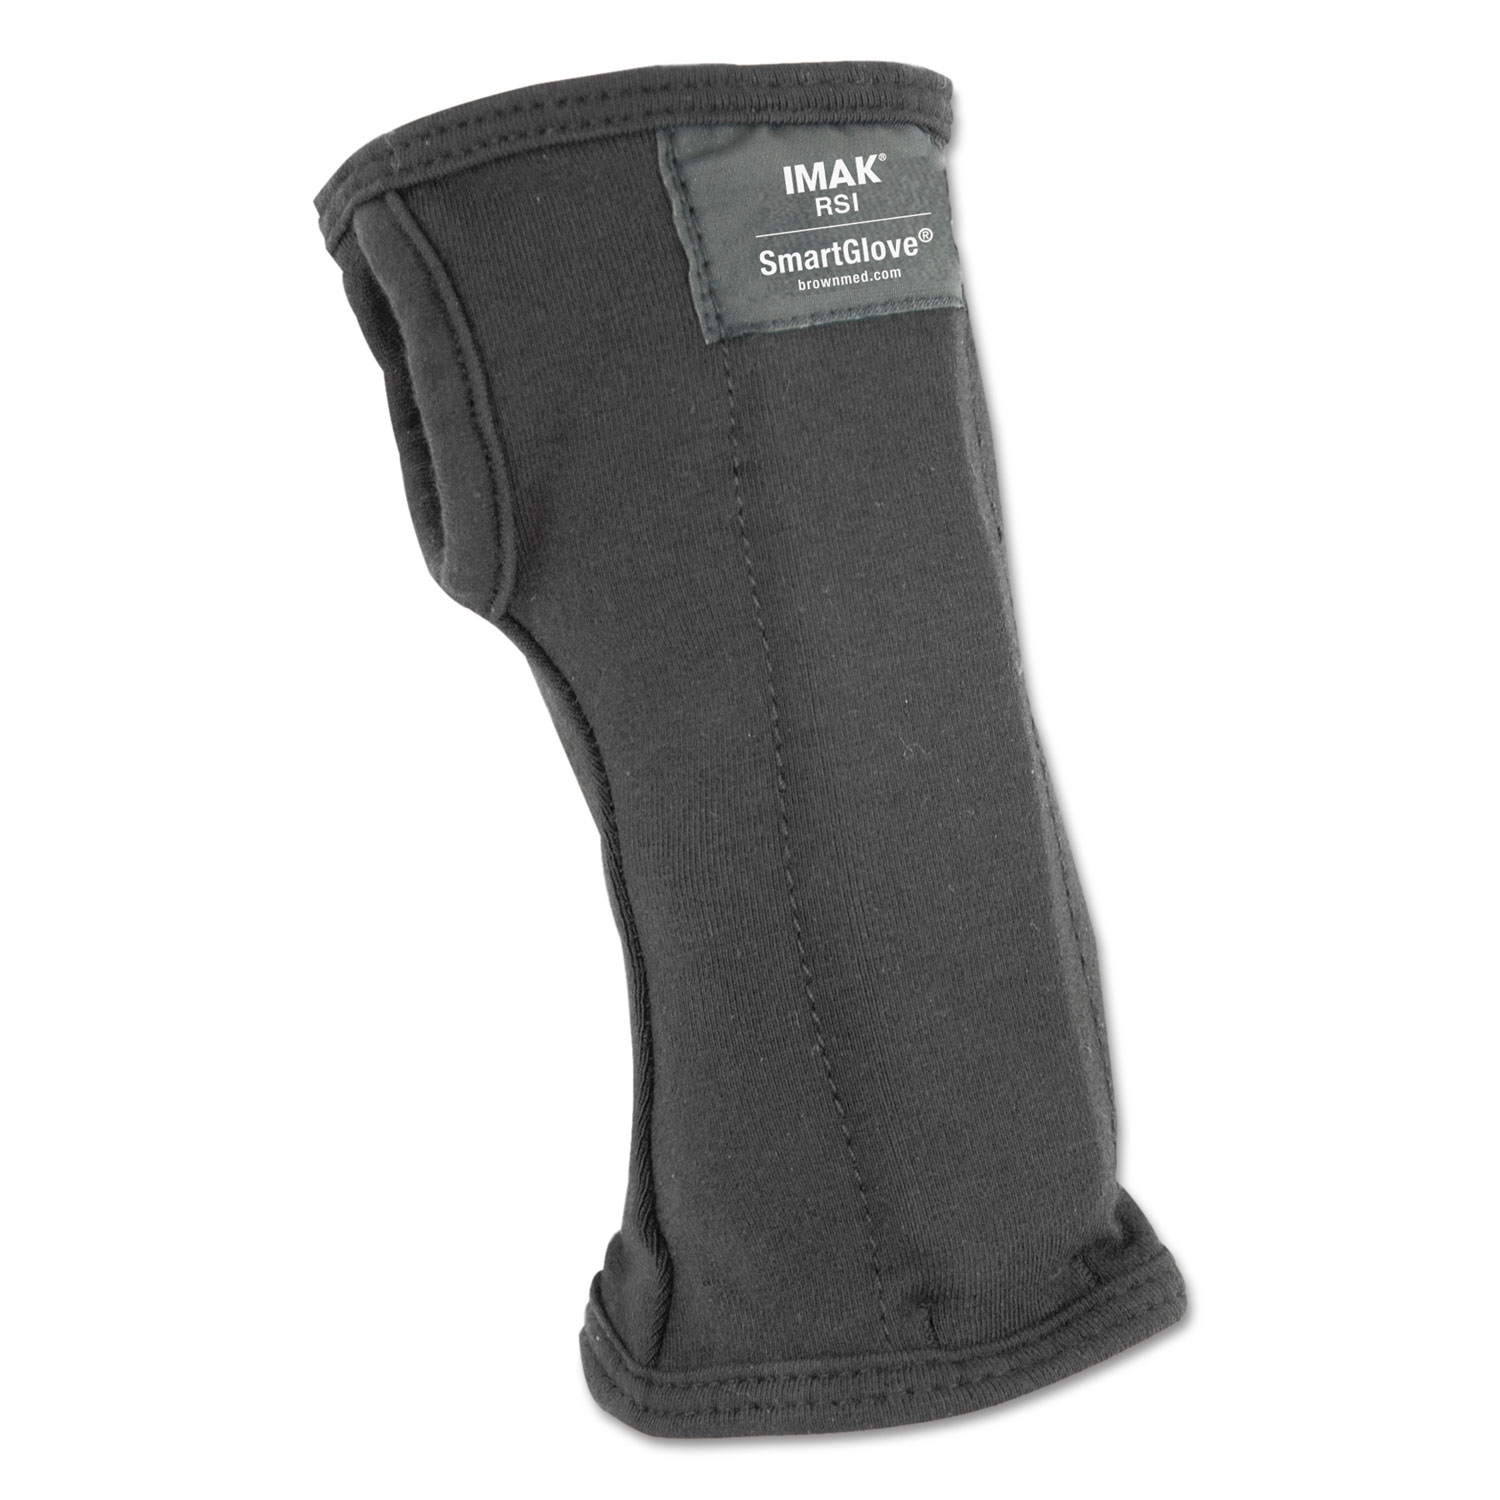  IMAK RSI A20127 SmartGlove Wrist Wrap, Large, Black (IMAA20127) 